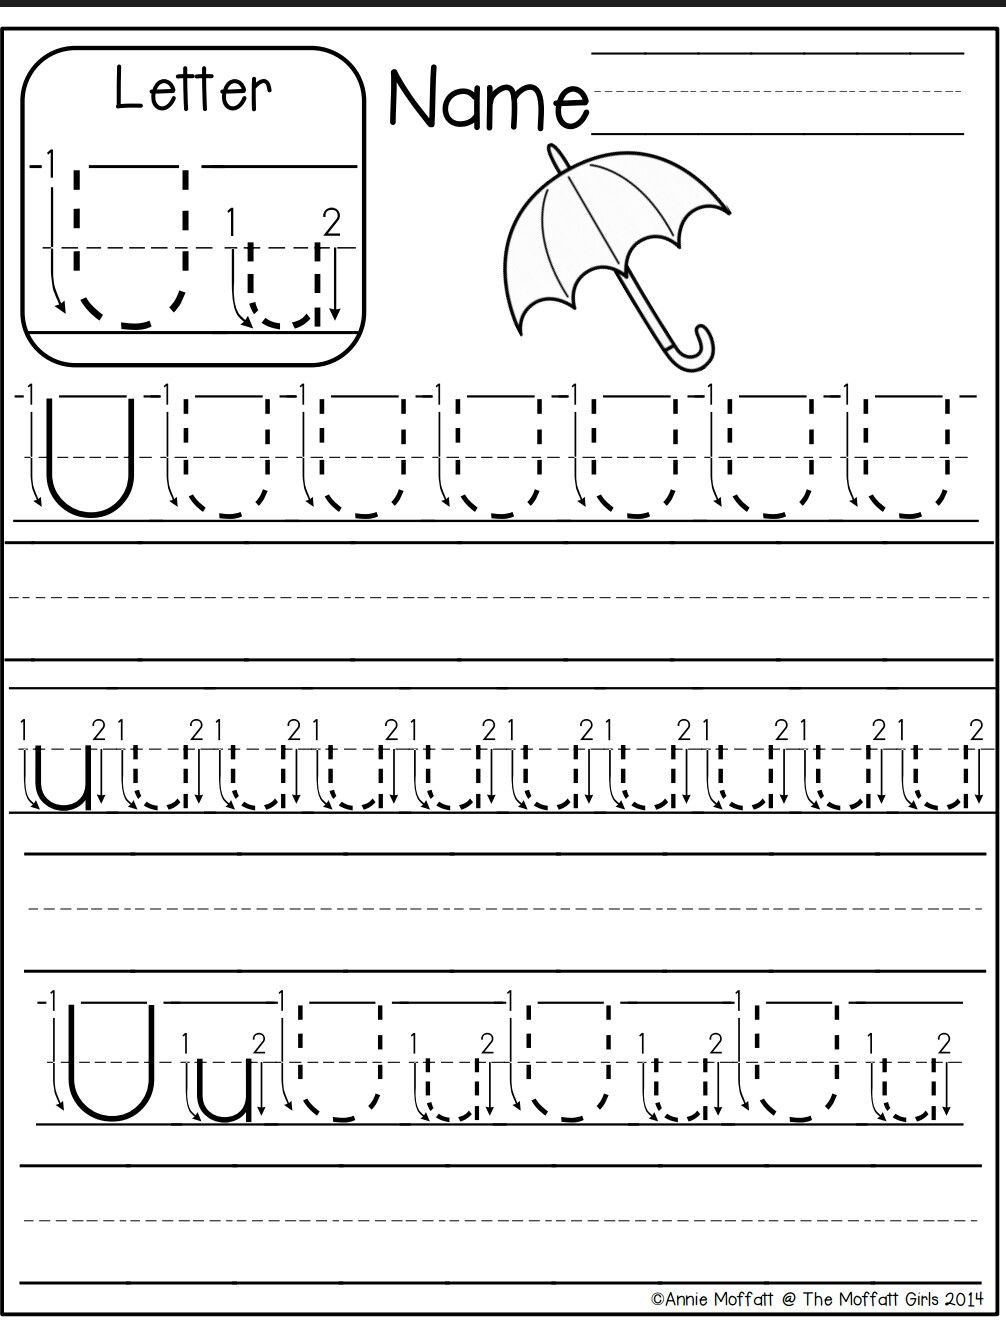 Letter U Worksheet | Kindergarten Worksheets Printable throughout Letter U Worksheets For Preschool